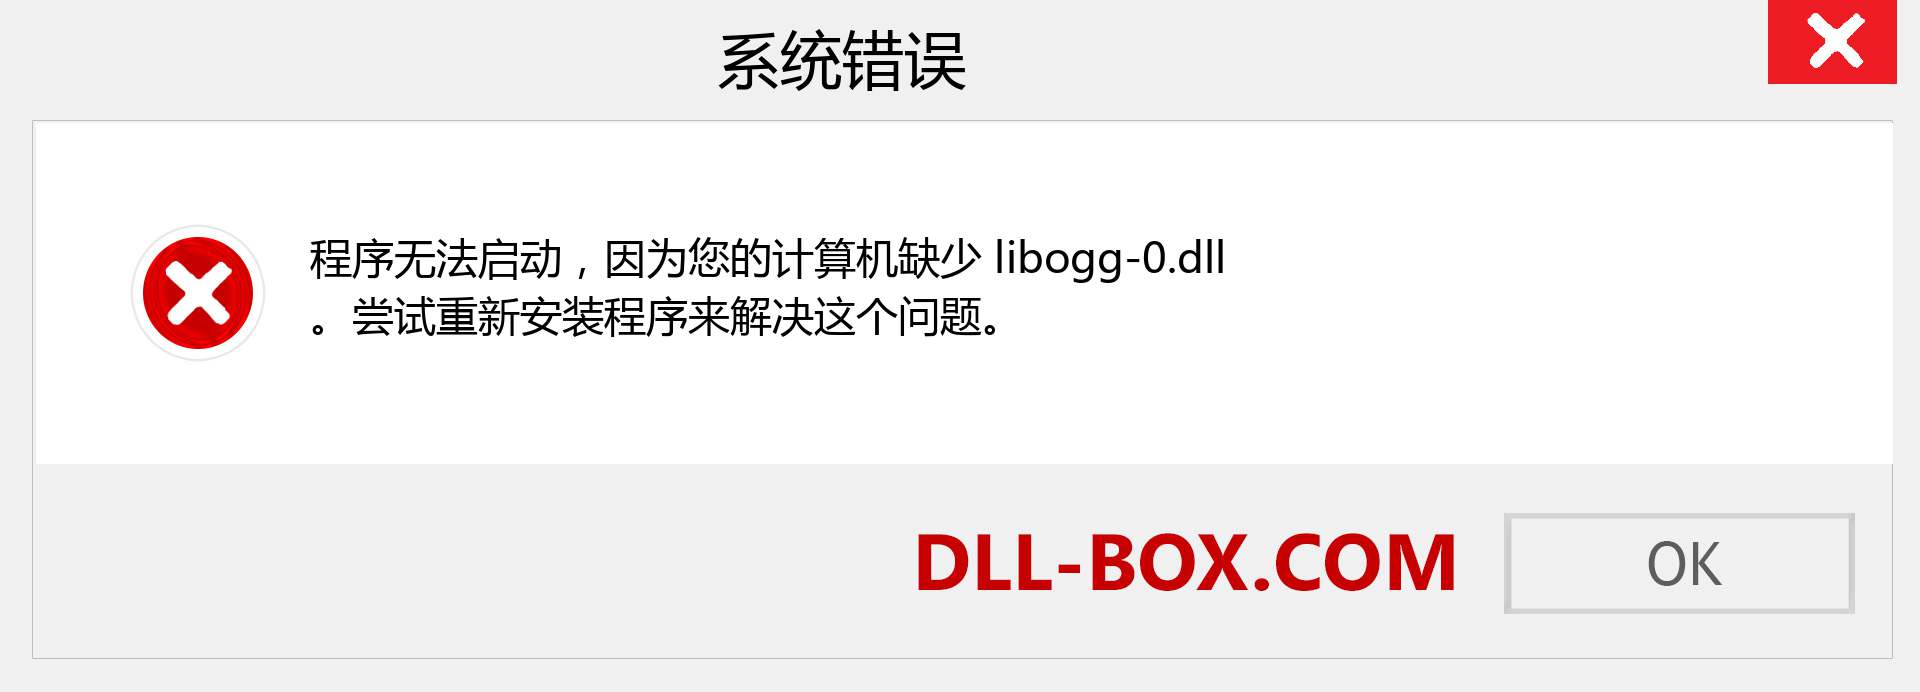 libogg-0.dll 文件丢失？。 适用于 Windows 7、8、10 的下载 - 修复 Windows、照片、图像上的 libogg-0 dll 丢失错误